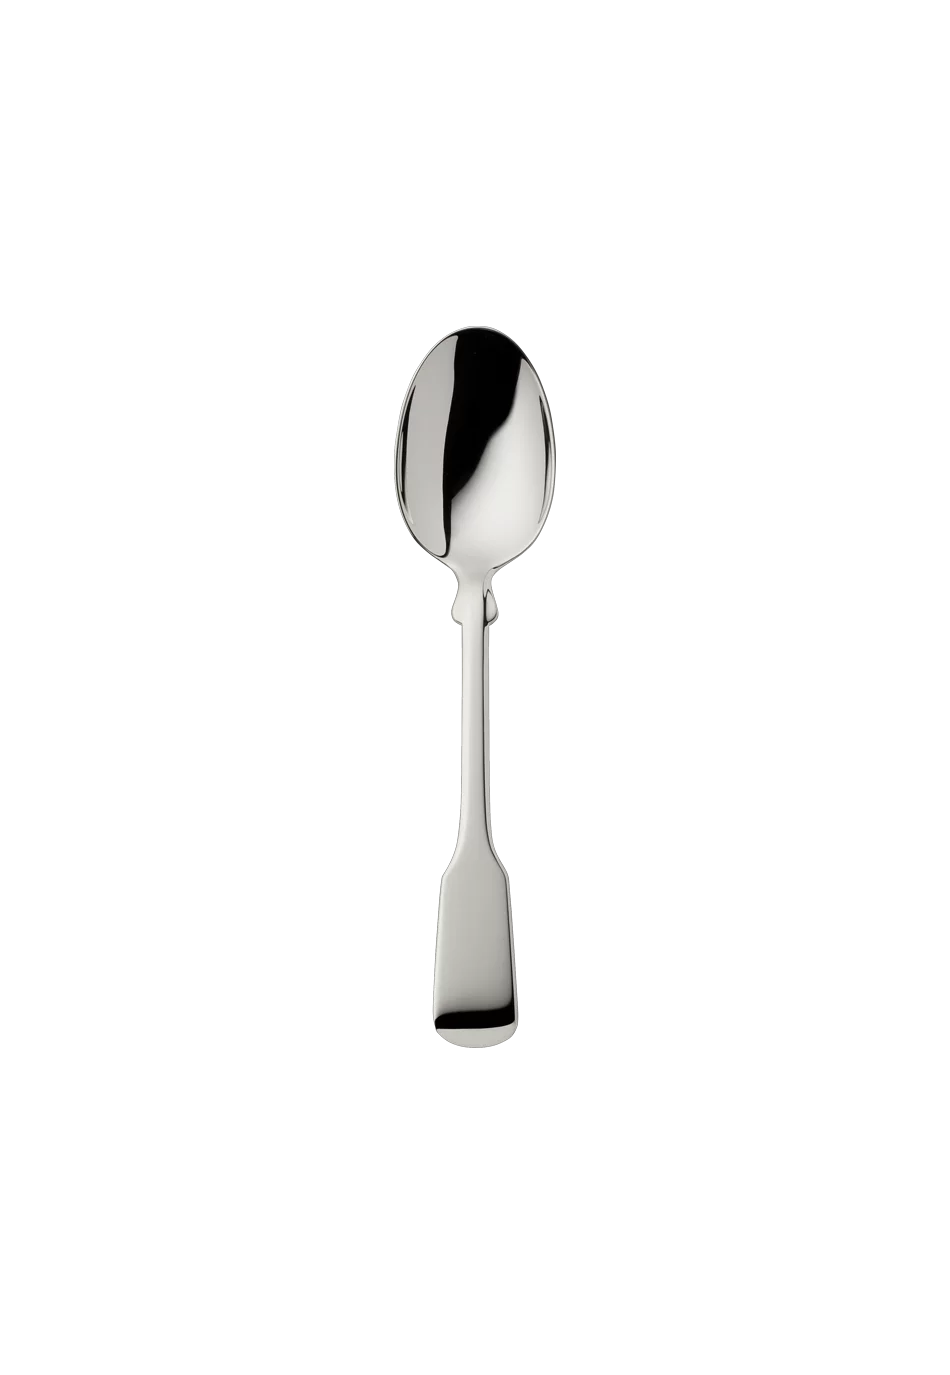 Alt-Spaten Children's Spoon (150g massive silverplated)